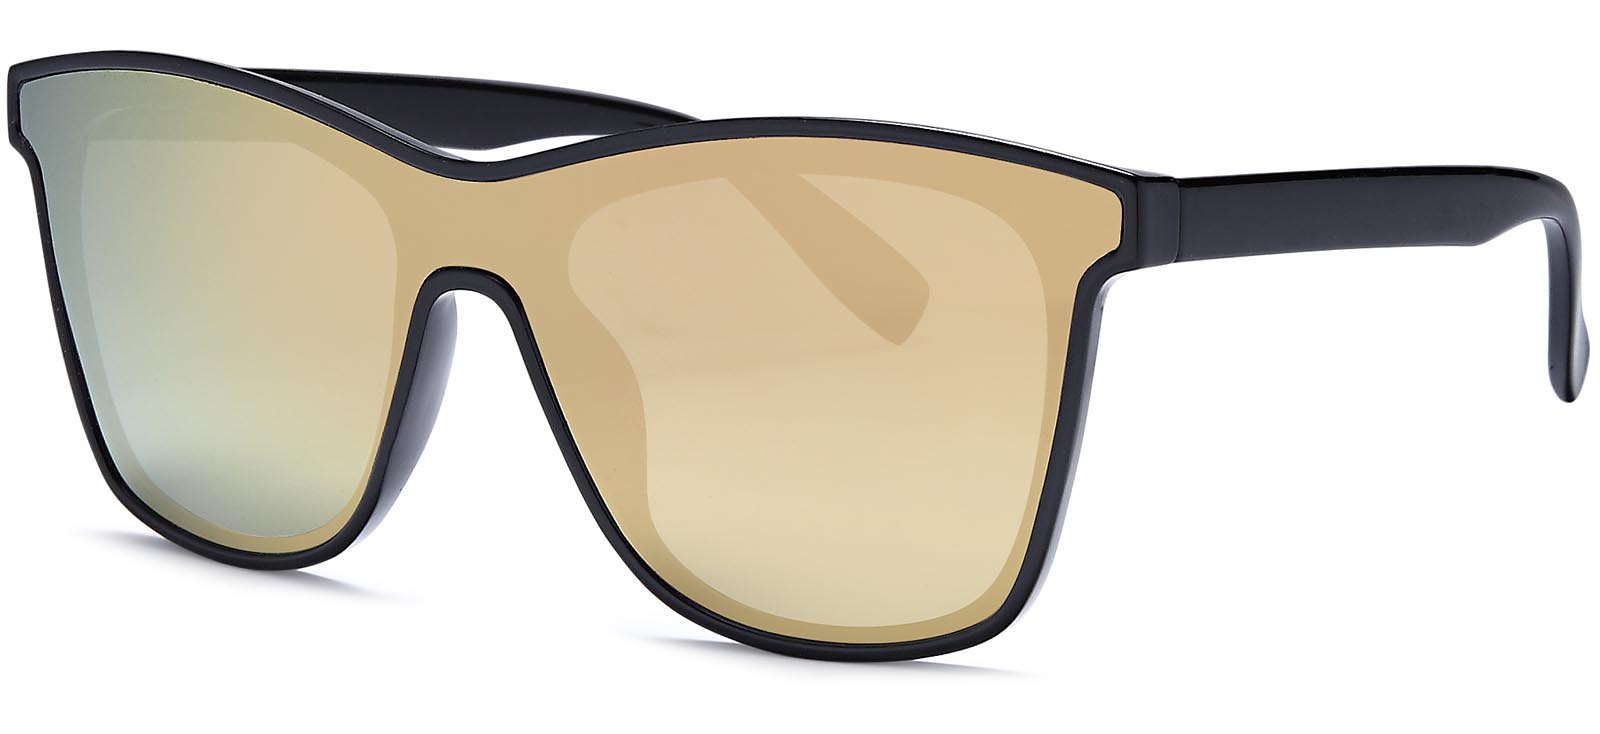 SH6863 Violetta - Sunglasses